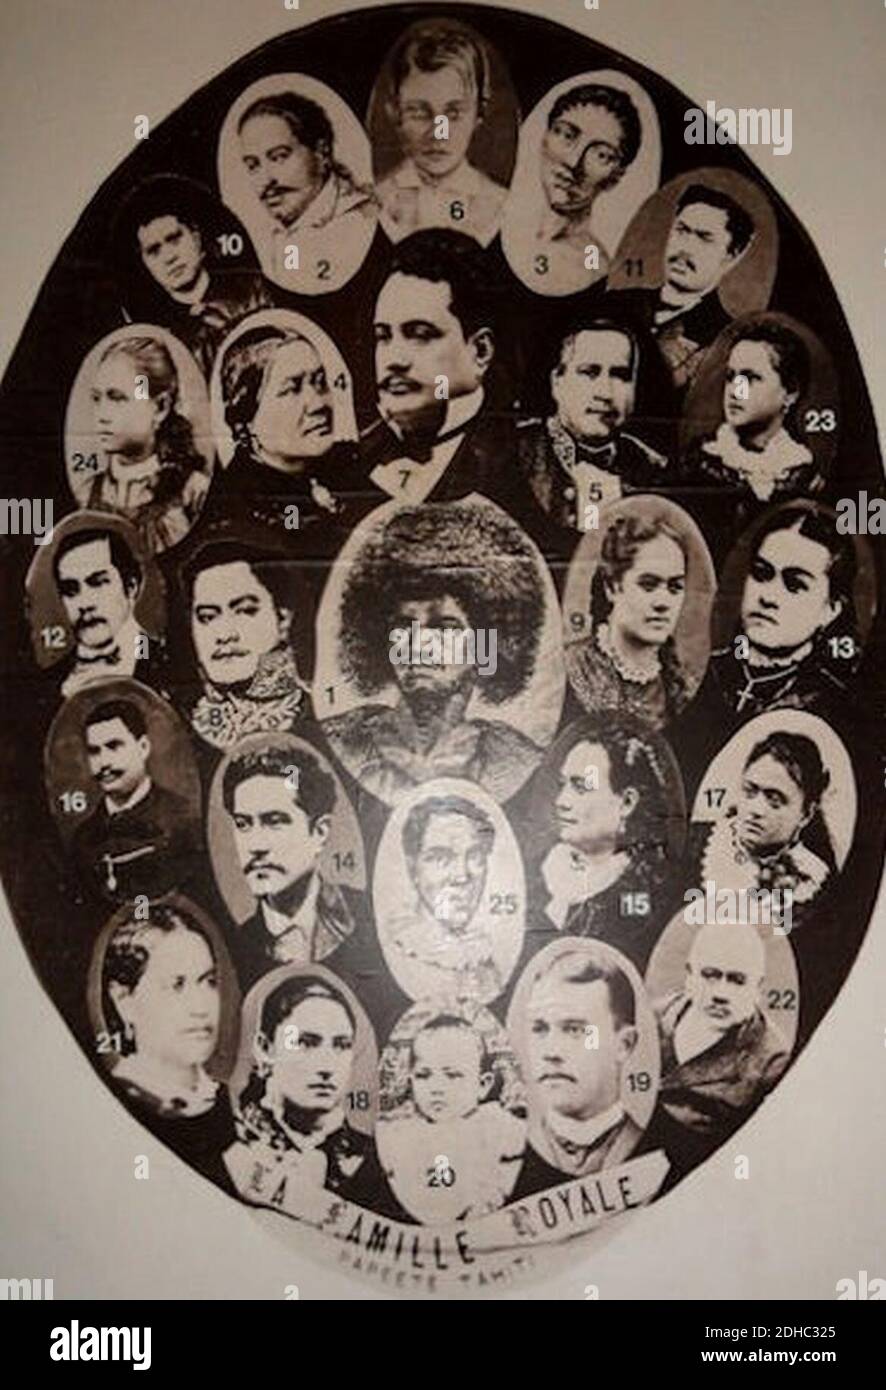 La Famille Royale de Tahiti. Foto Stock